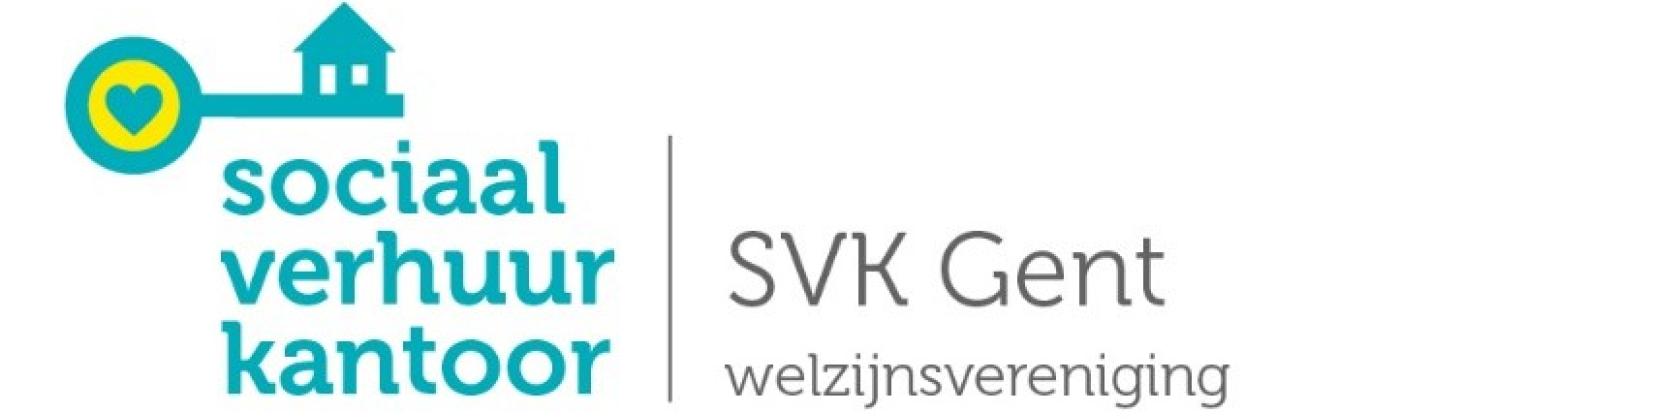 Dit is het logo van het Sociaal Verhuurkantoor Gent (SVK Gent)